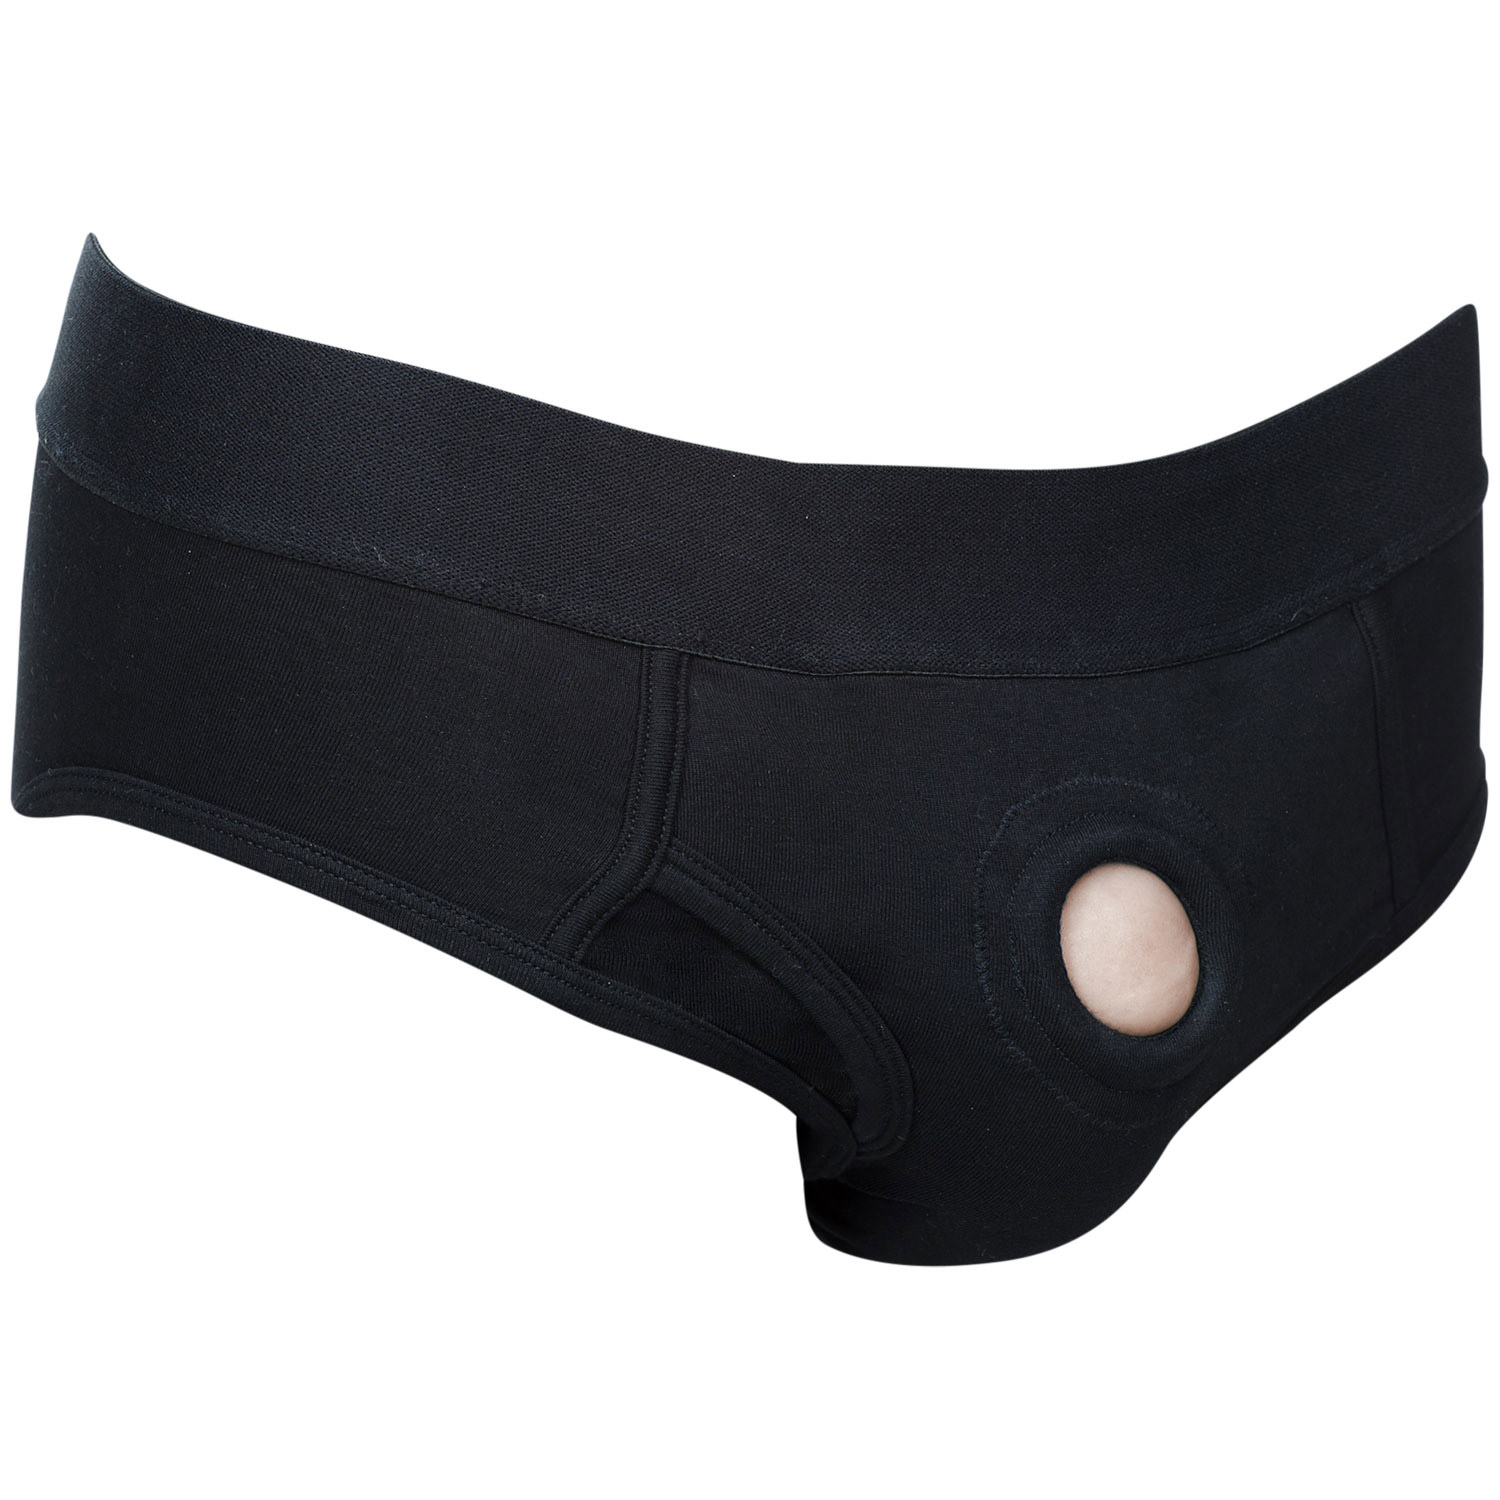 Calexotics Packer Gear Brief Harness - Svart - M | Favoriter//REA för kvinnor//Par//REA för Par//Strap-on//Strap-on Dildo//REA//Vibrerande Strap-on//Seledildos//Par Sexleksaker//Harness//CalExotics | Intimast